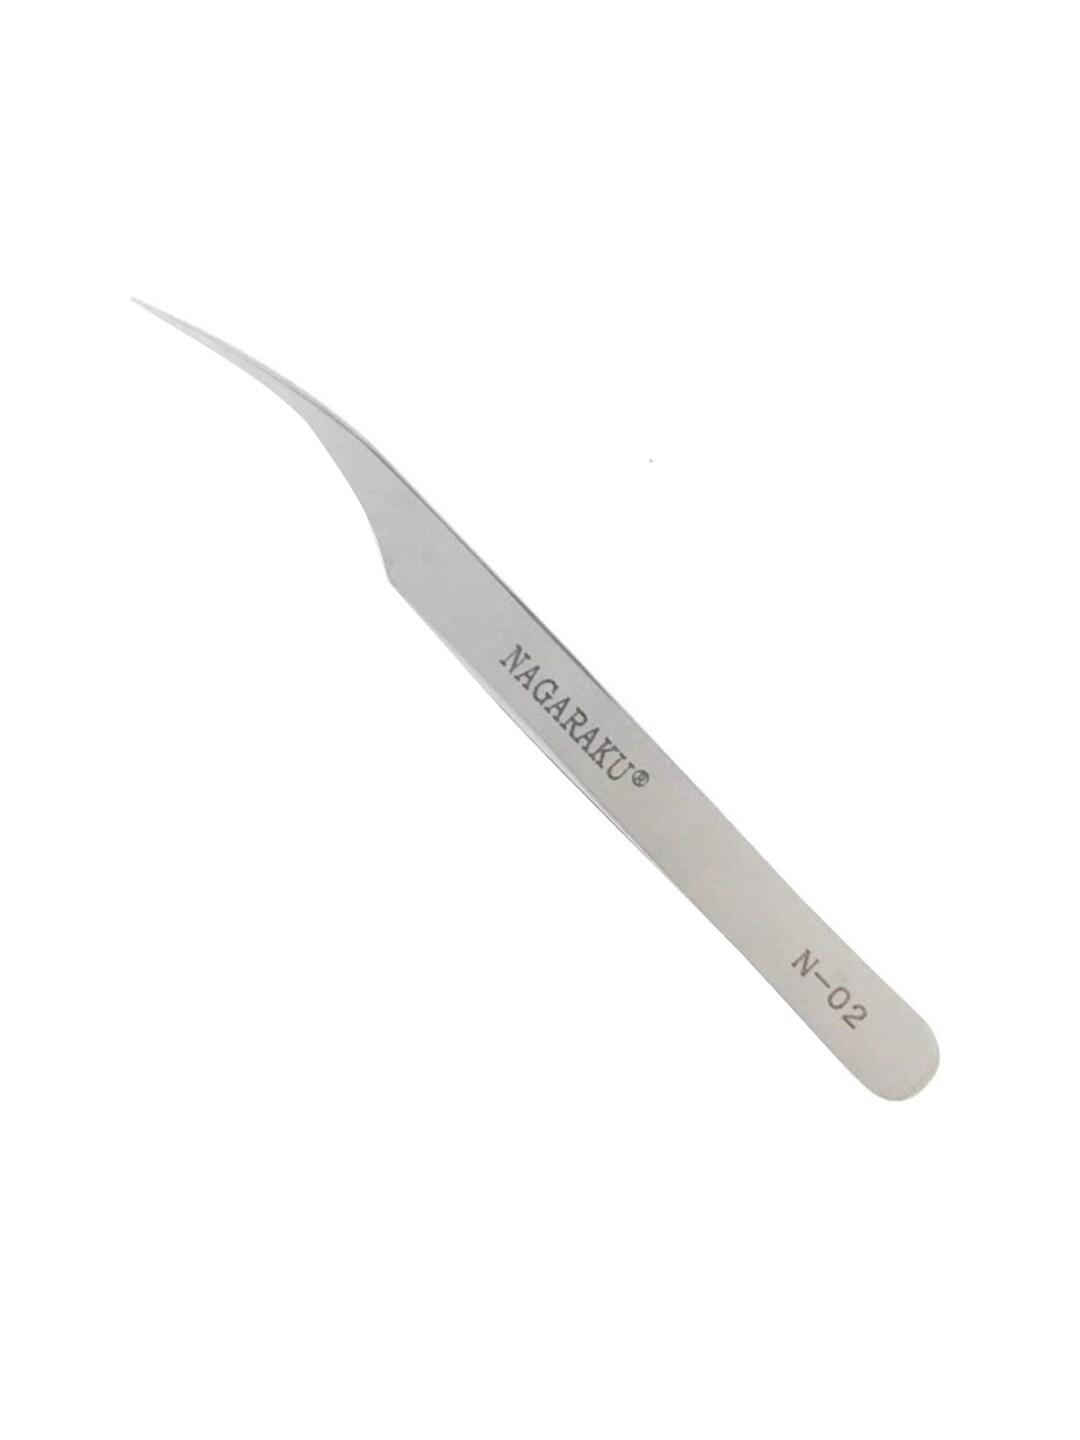 NAGARAKU False Eyelash N02 Stainless Steel Non-Magnetic Dolphin Shape Tweezers - Silver